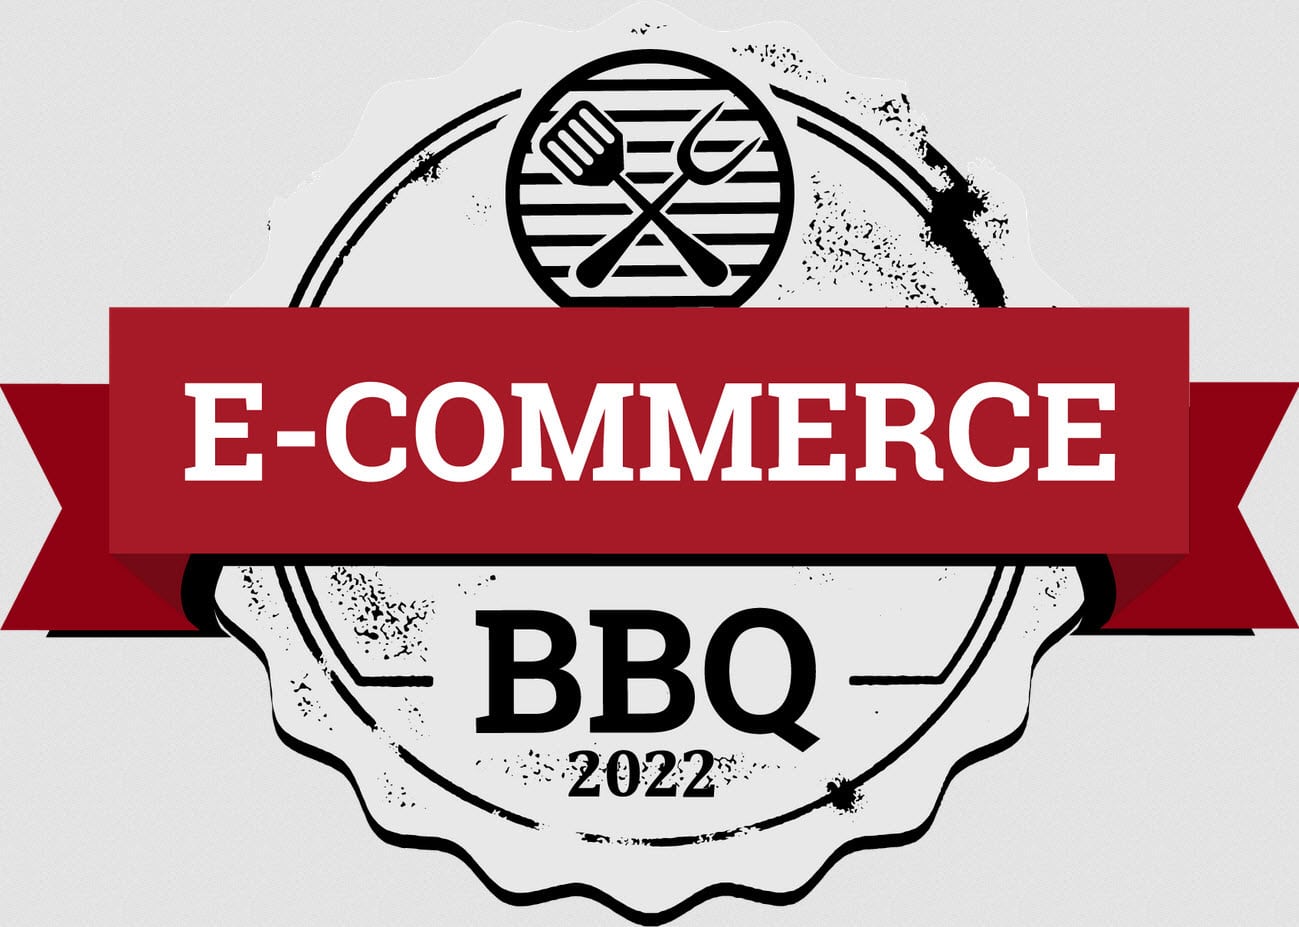 E-Commerce BBQ 2022